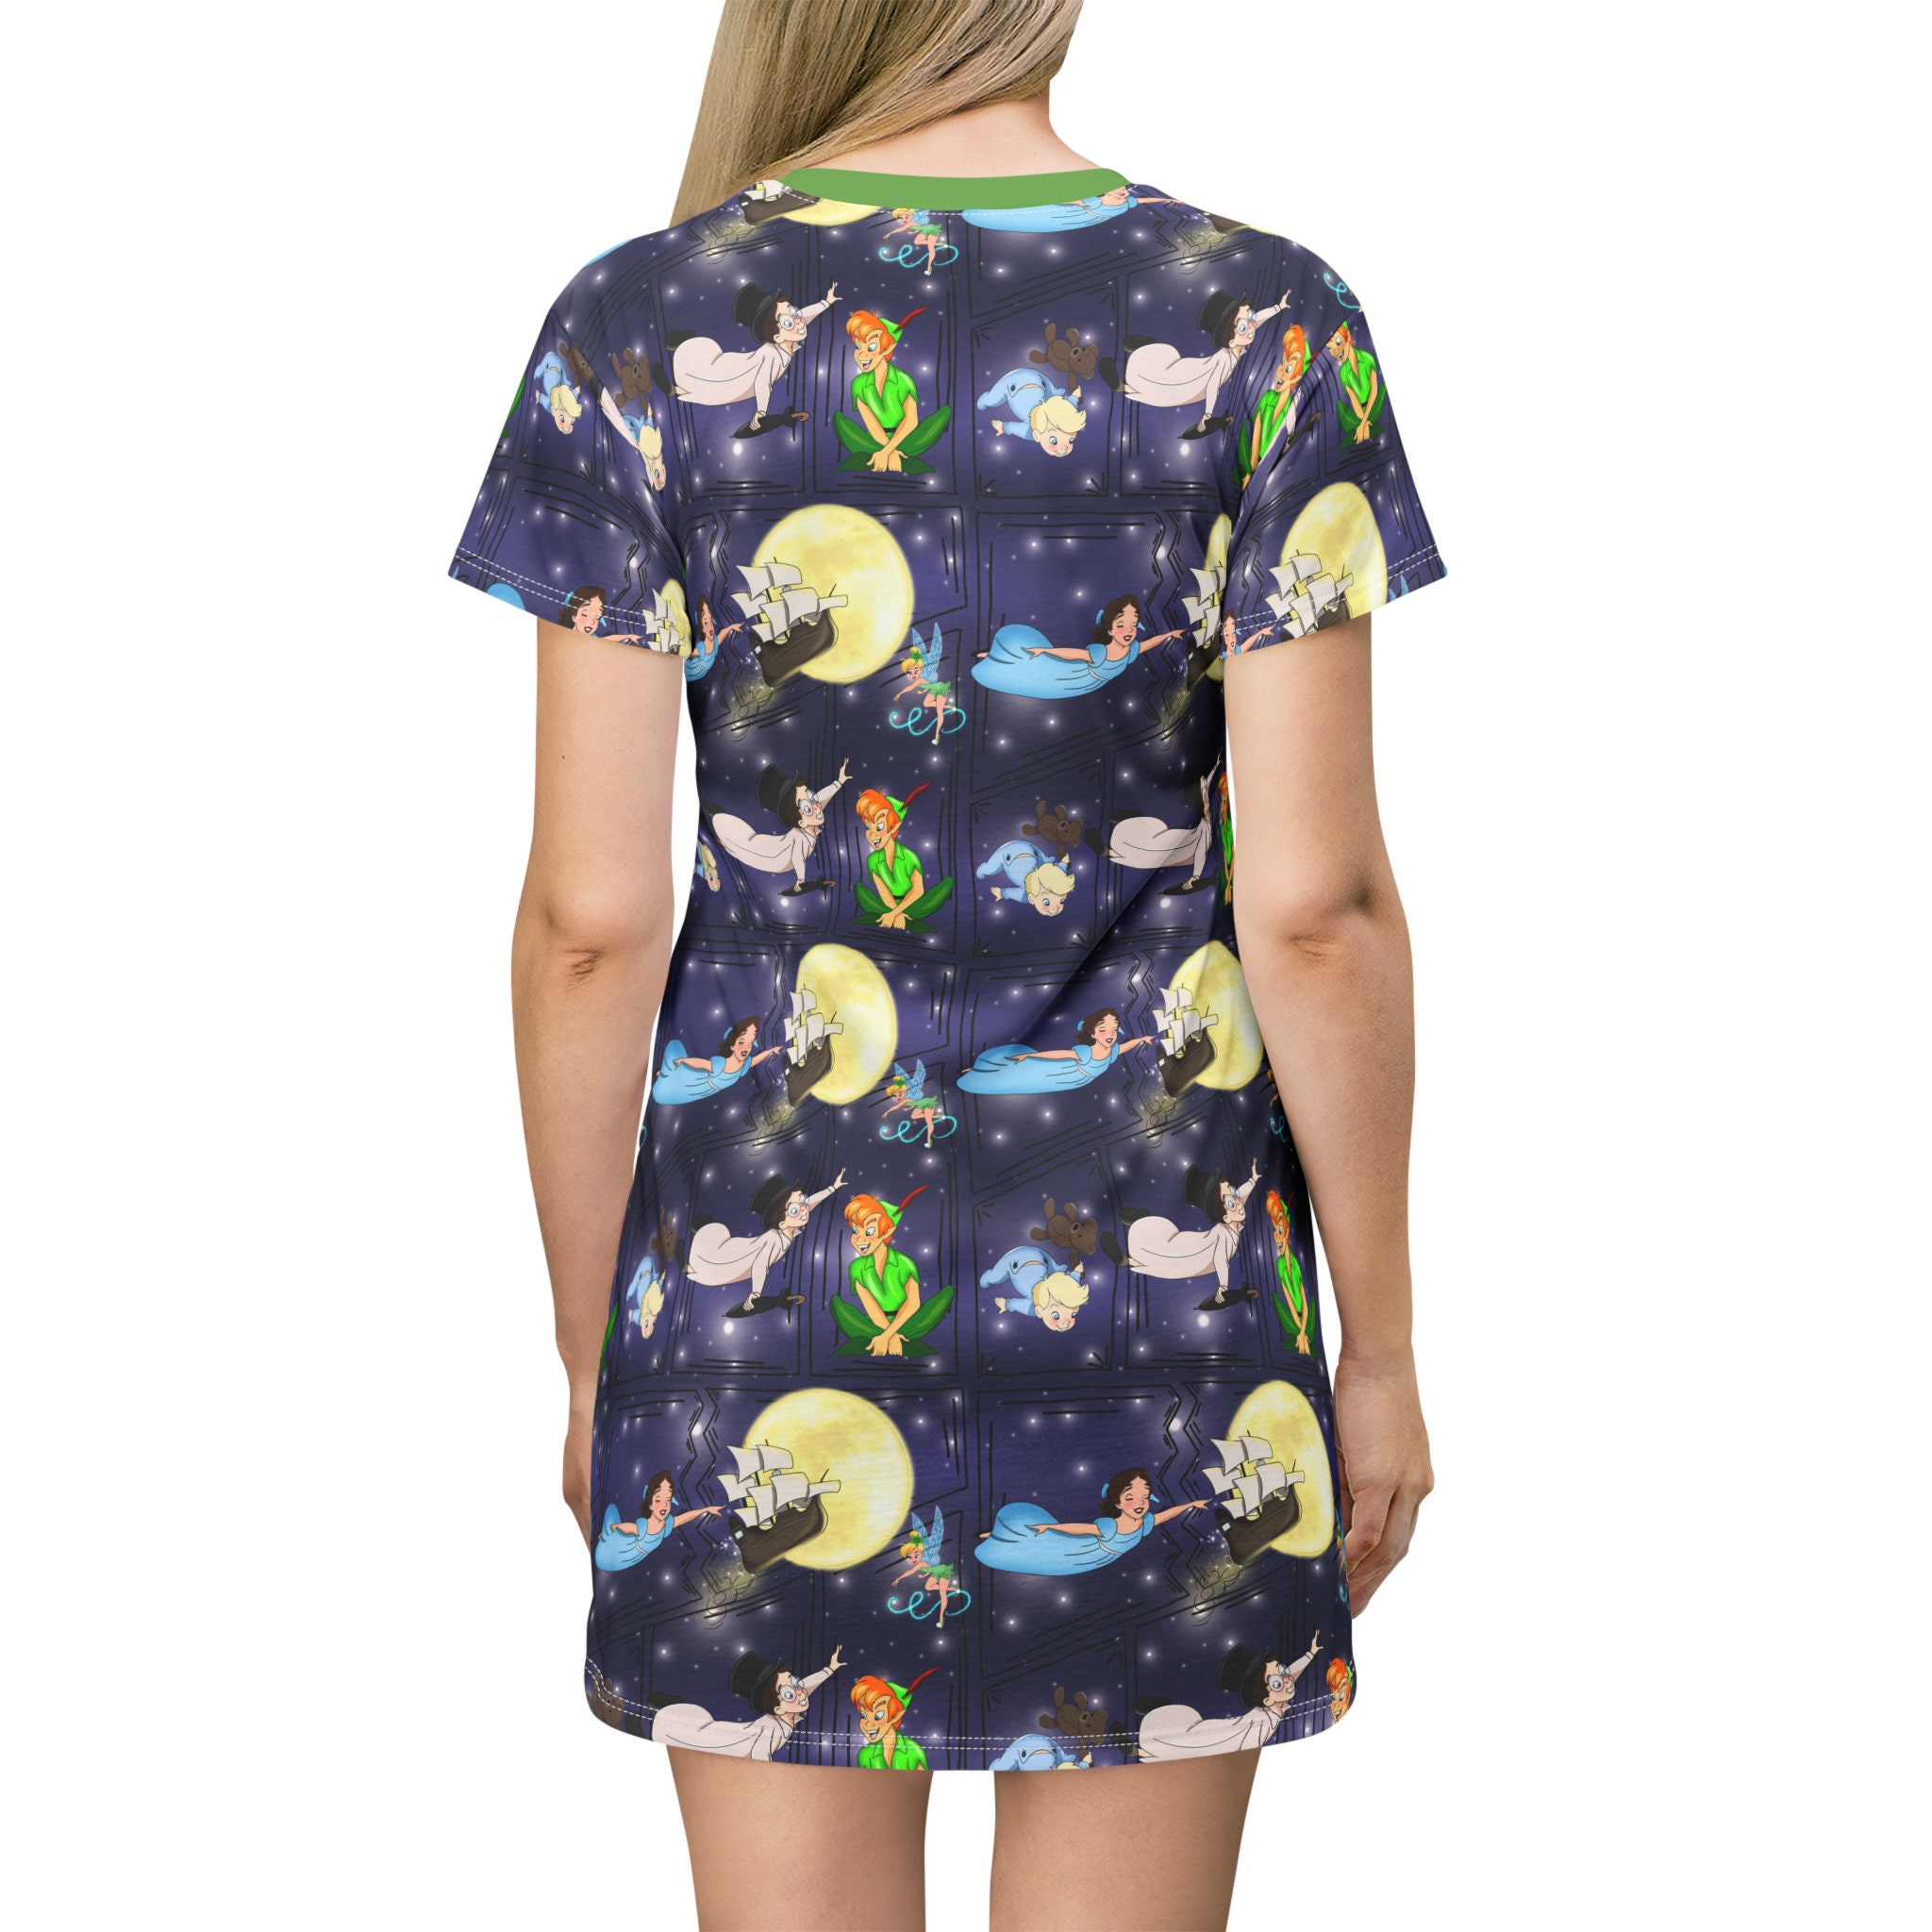 Peter Pan Disney T-Shirt Dress, Cartoon Women's T-Shirt Dress